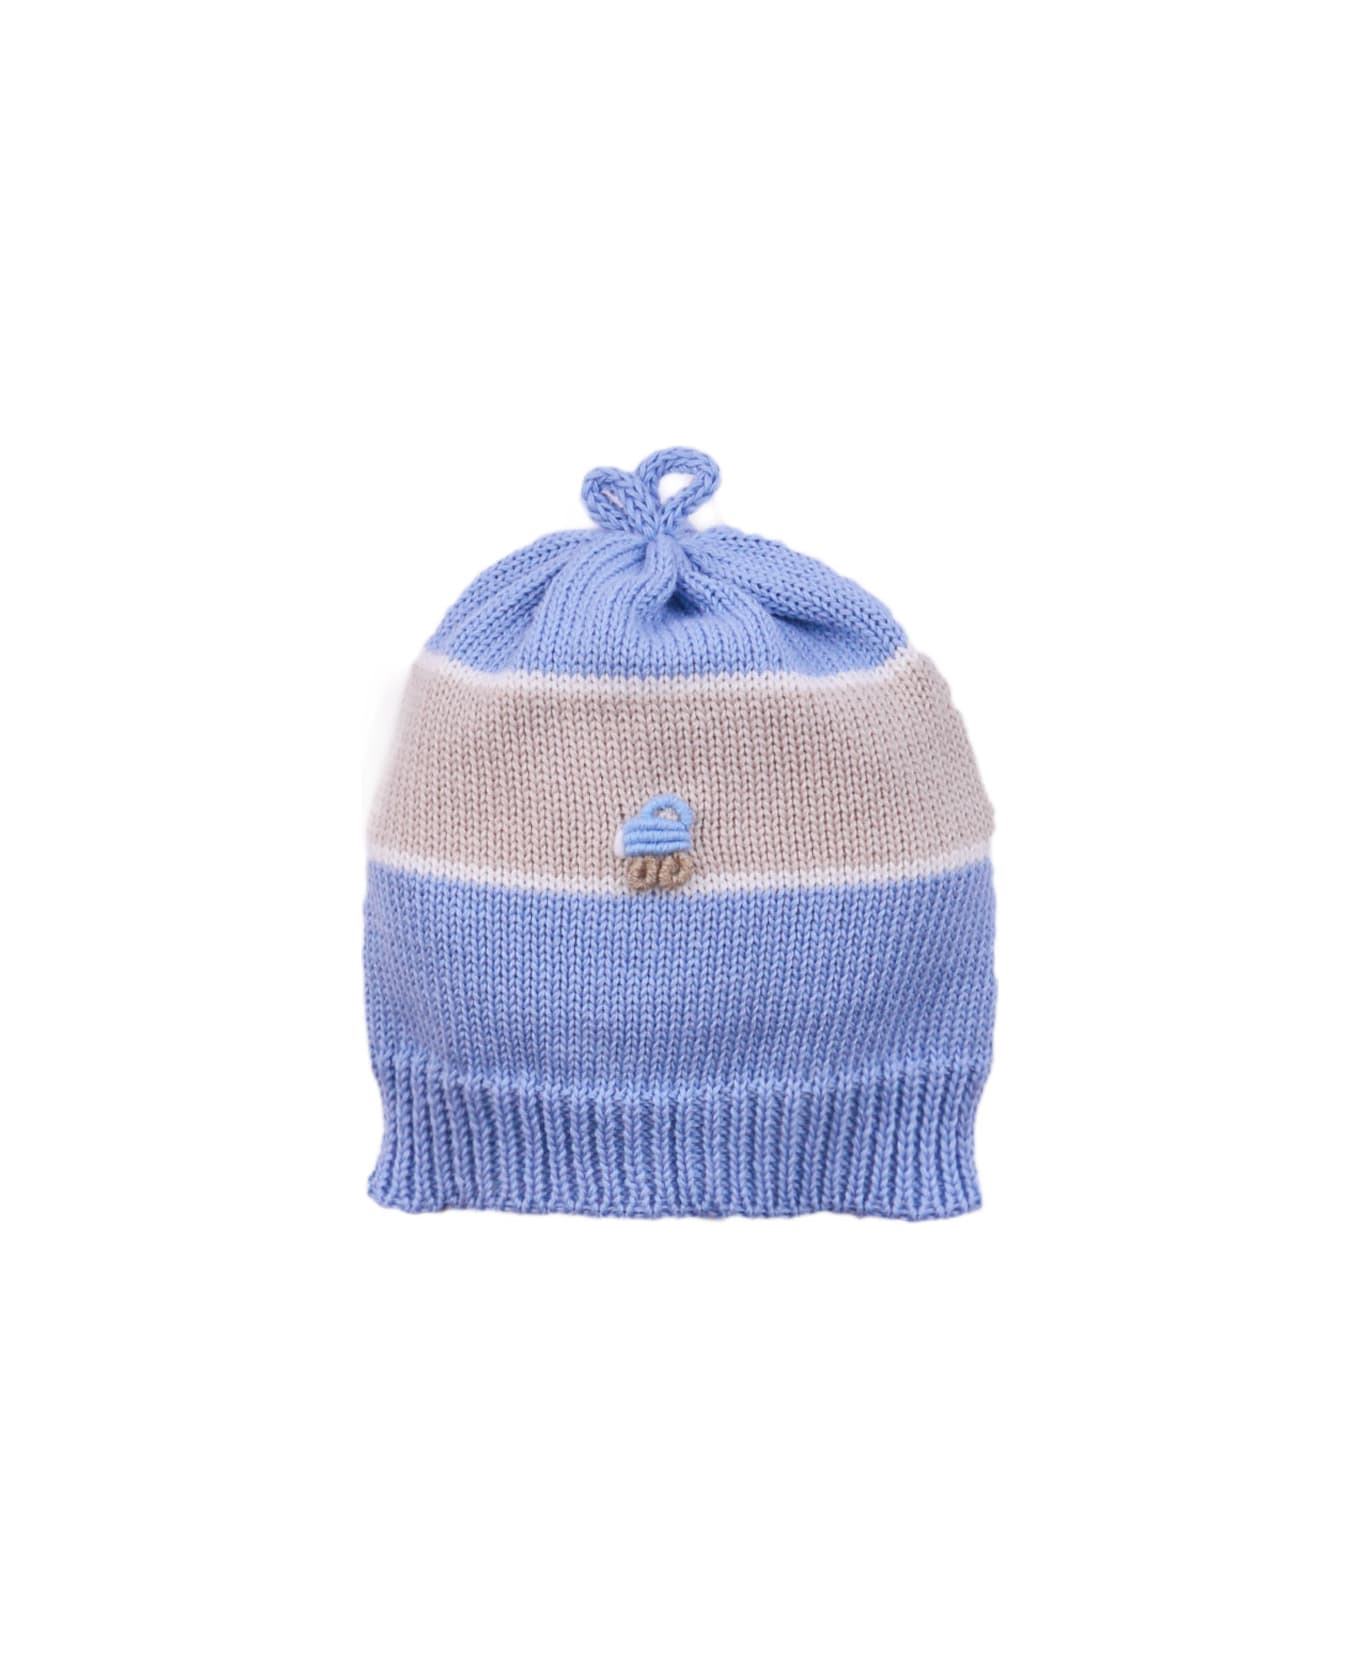 Piccola Giuggiola Cotton Hat - Light blue